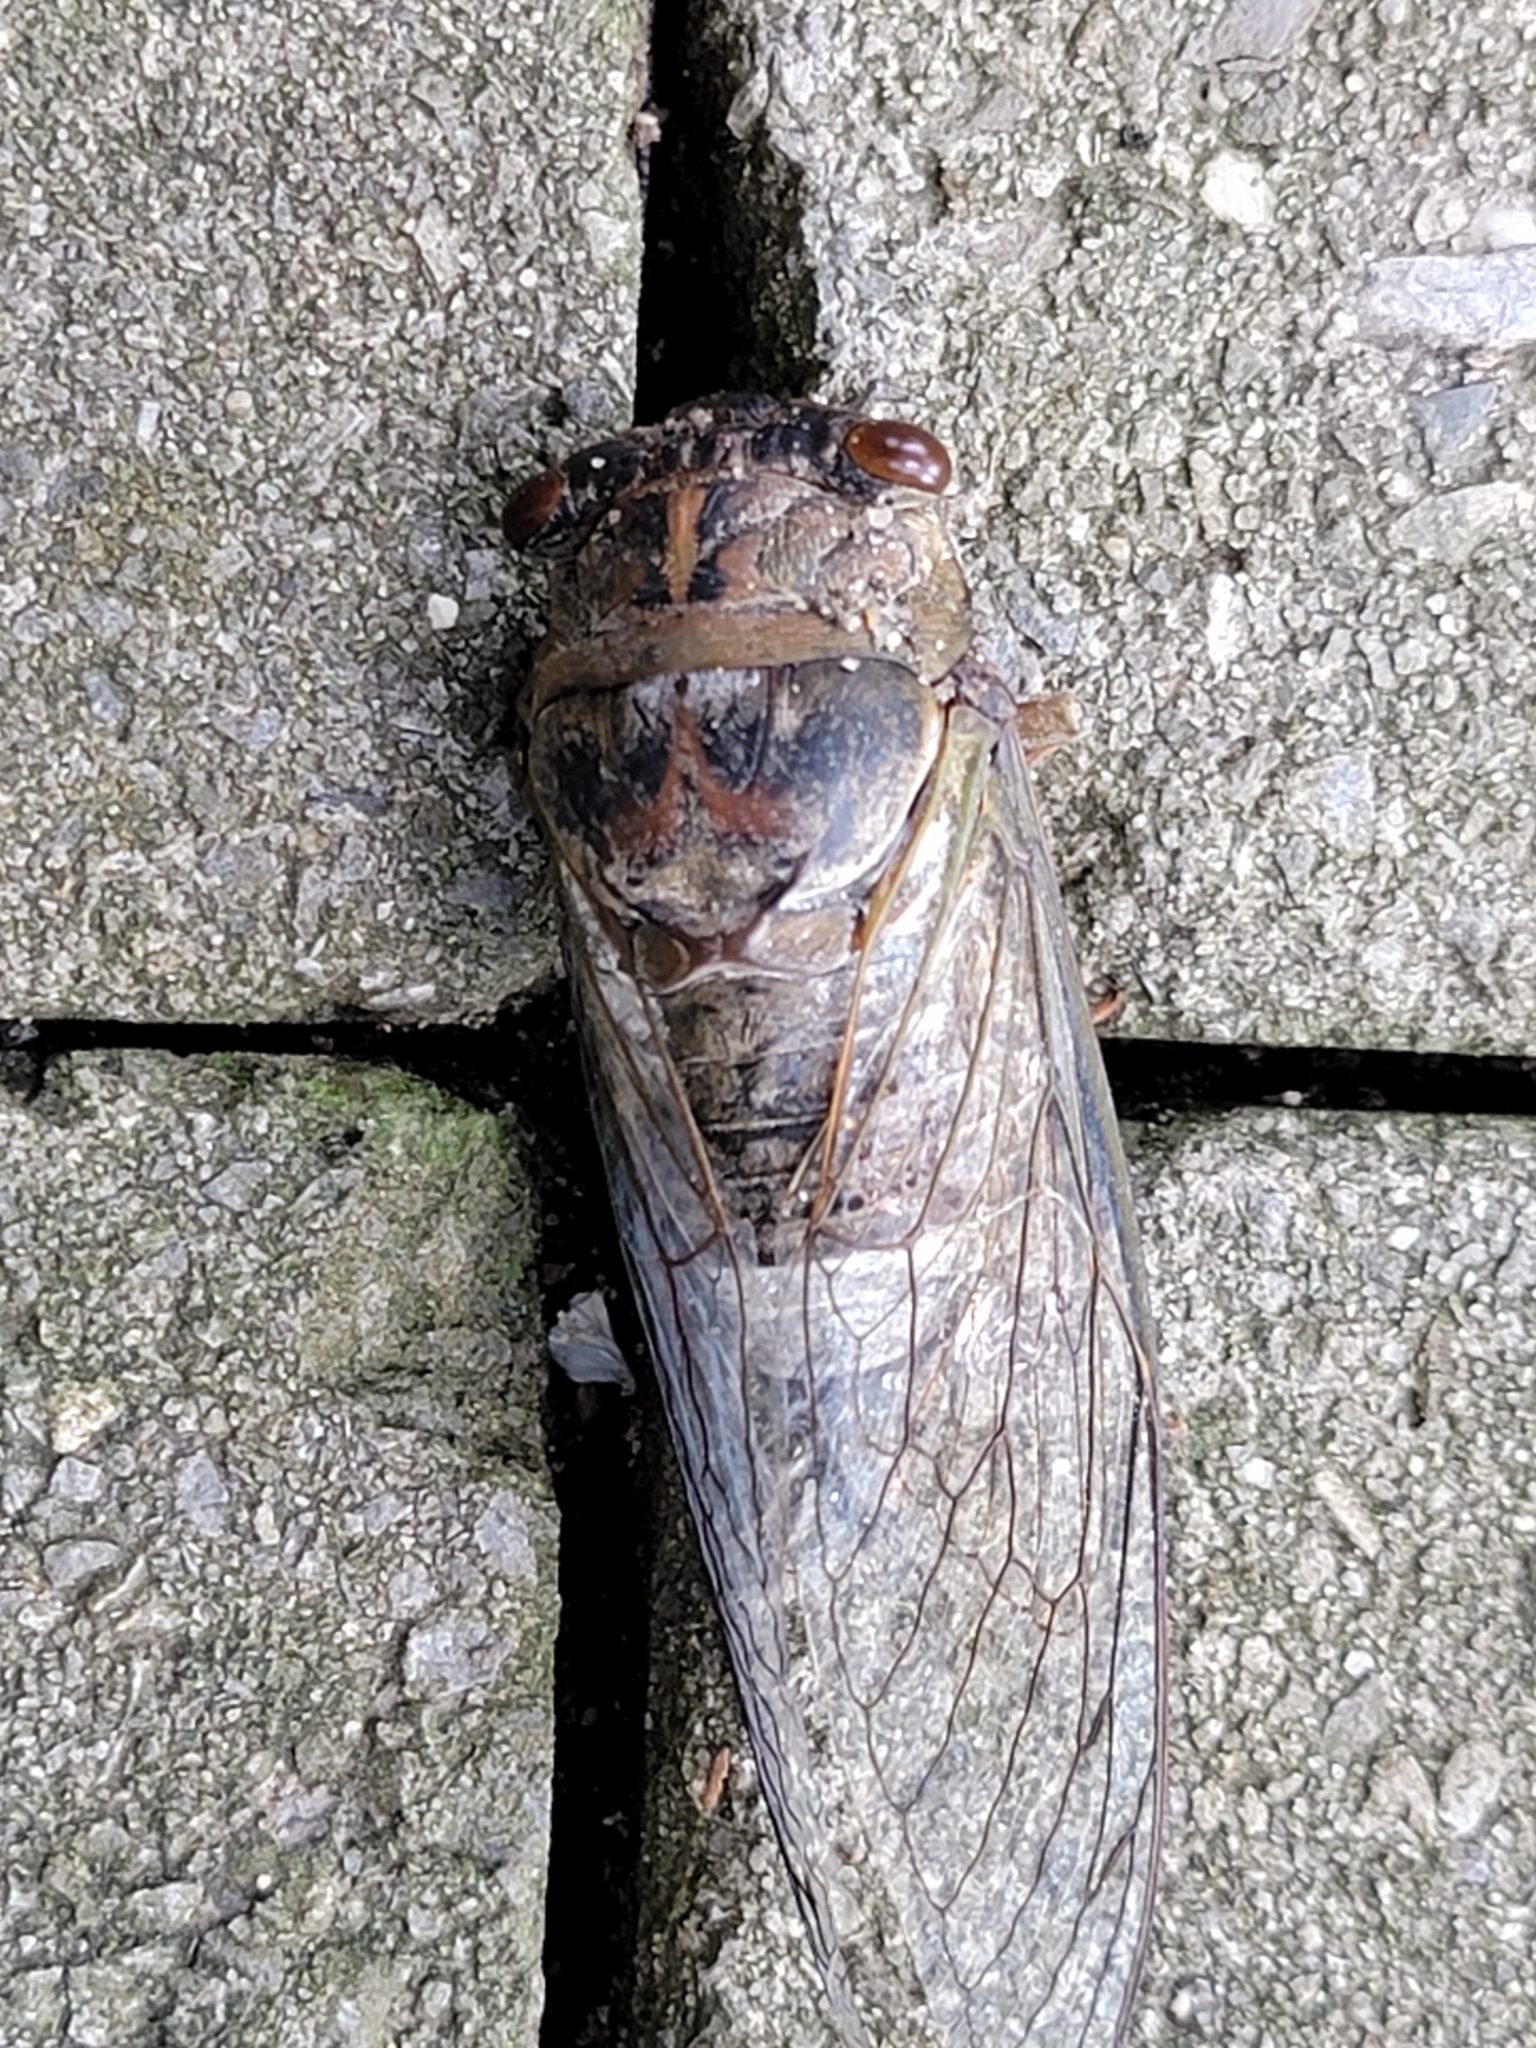 Maryland Biodiversity Project - Northern Dusk Singing Cicada ...